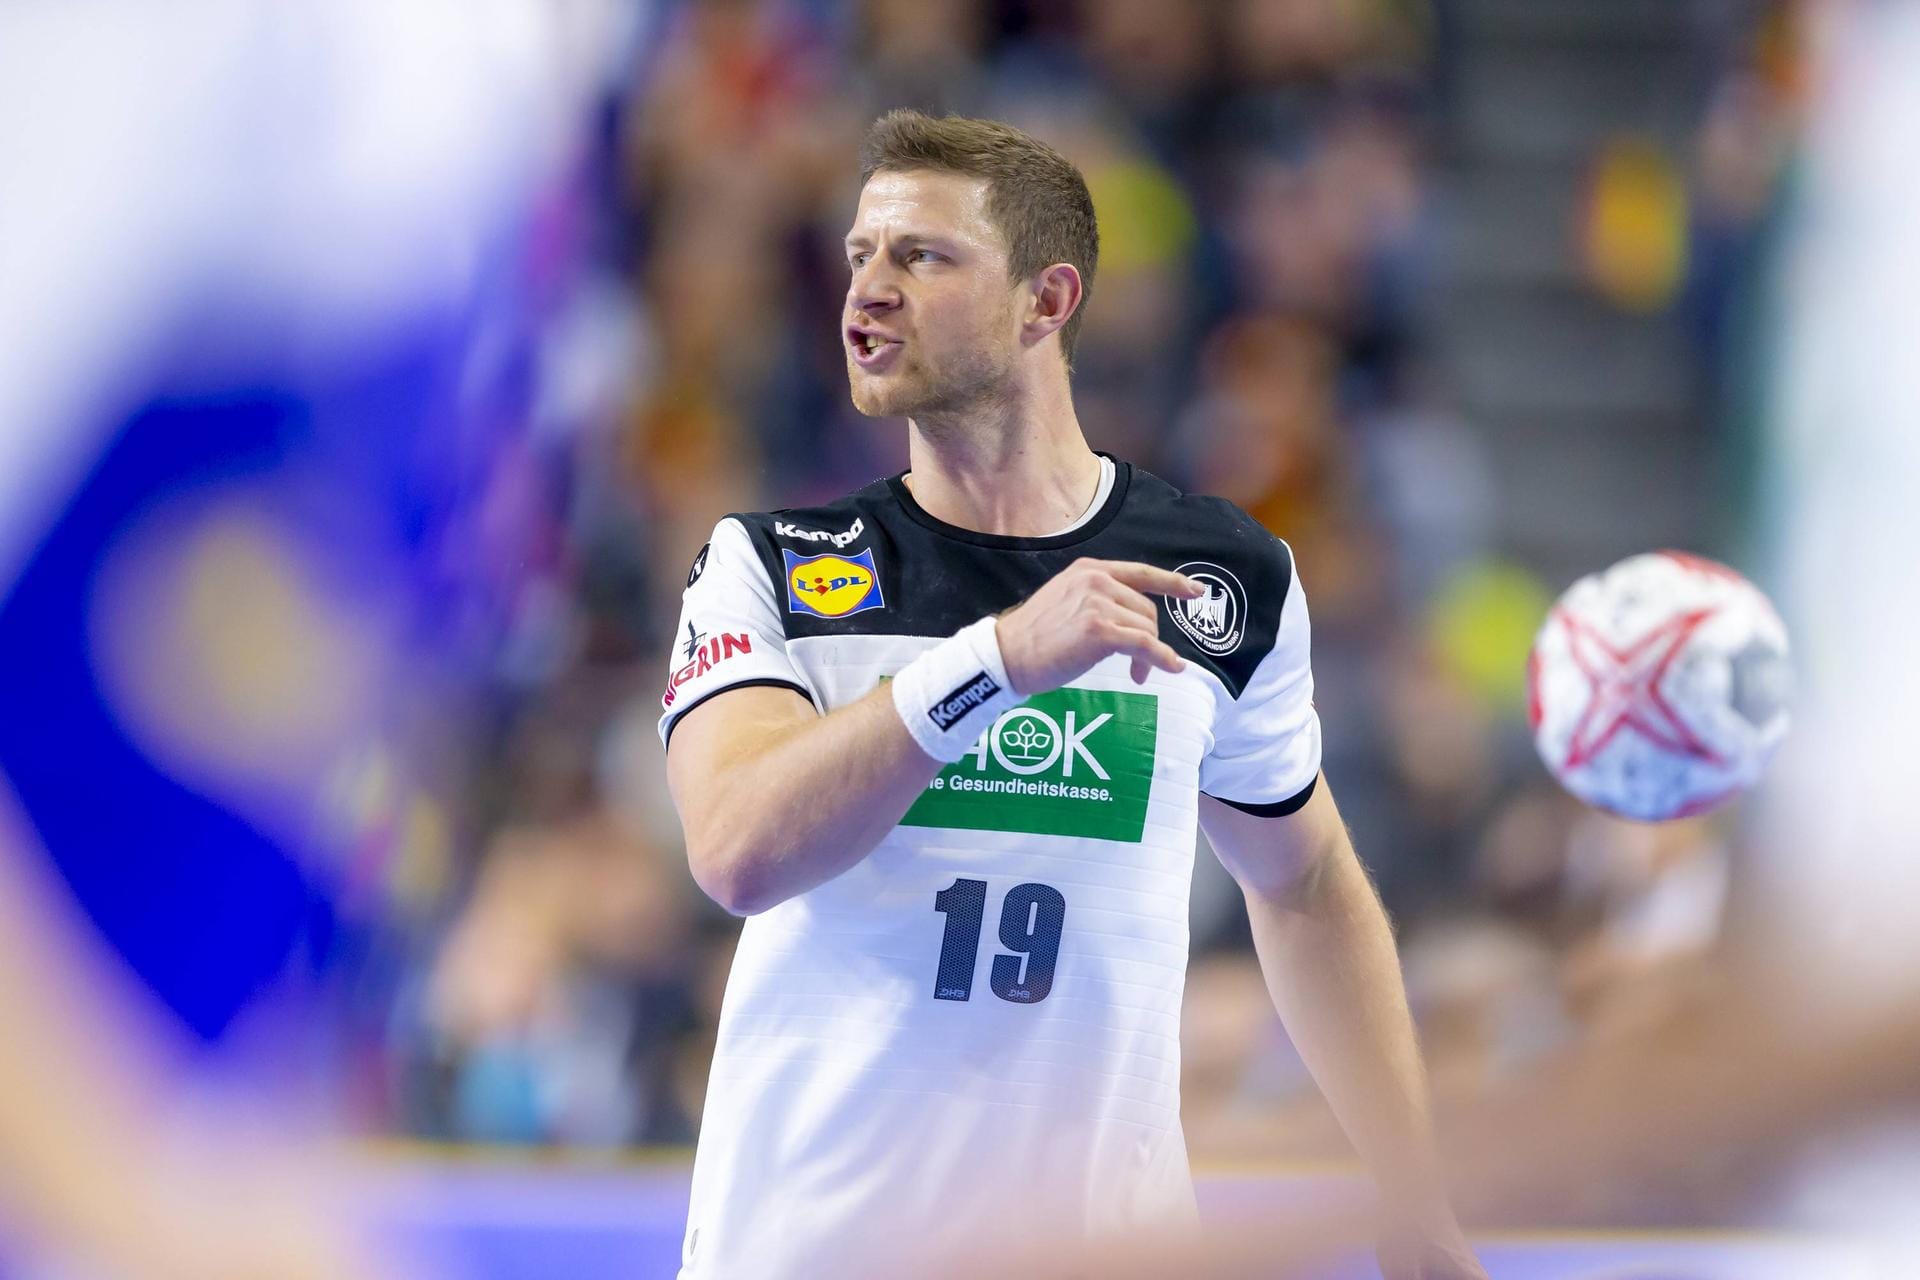 Mitspieler verrät So ticken die deutschen Handball-Stars